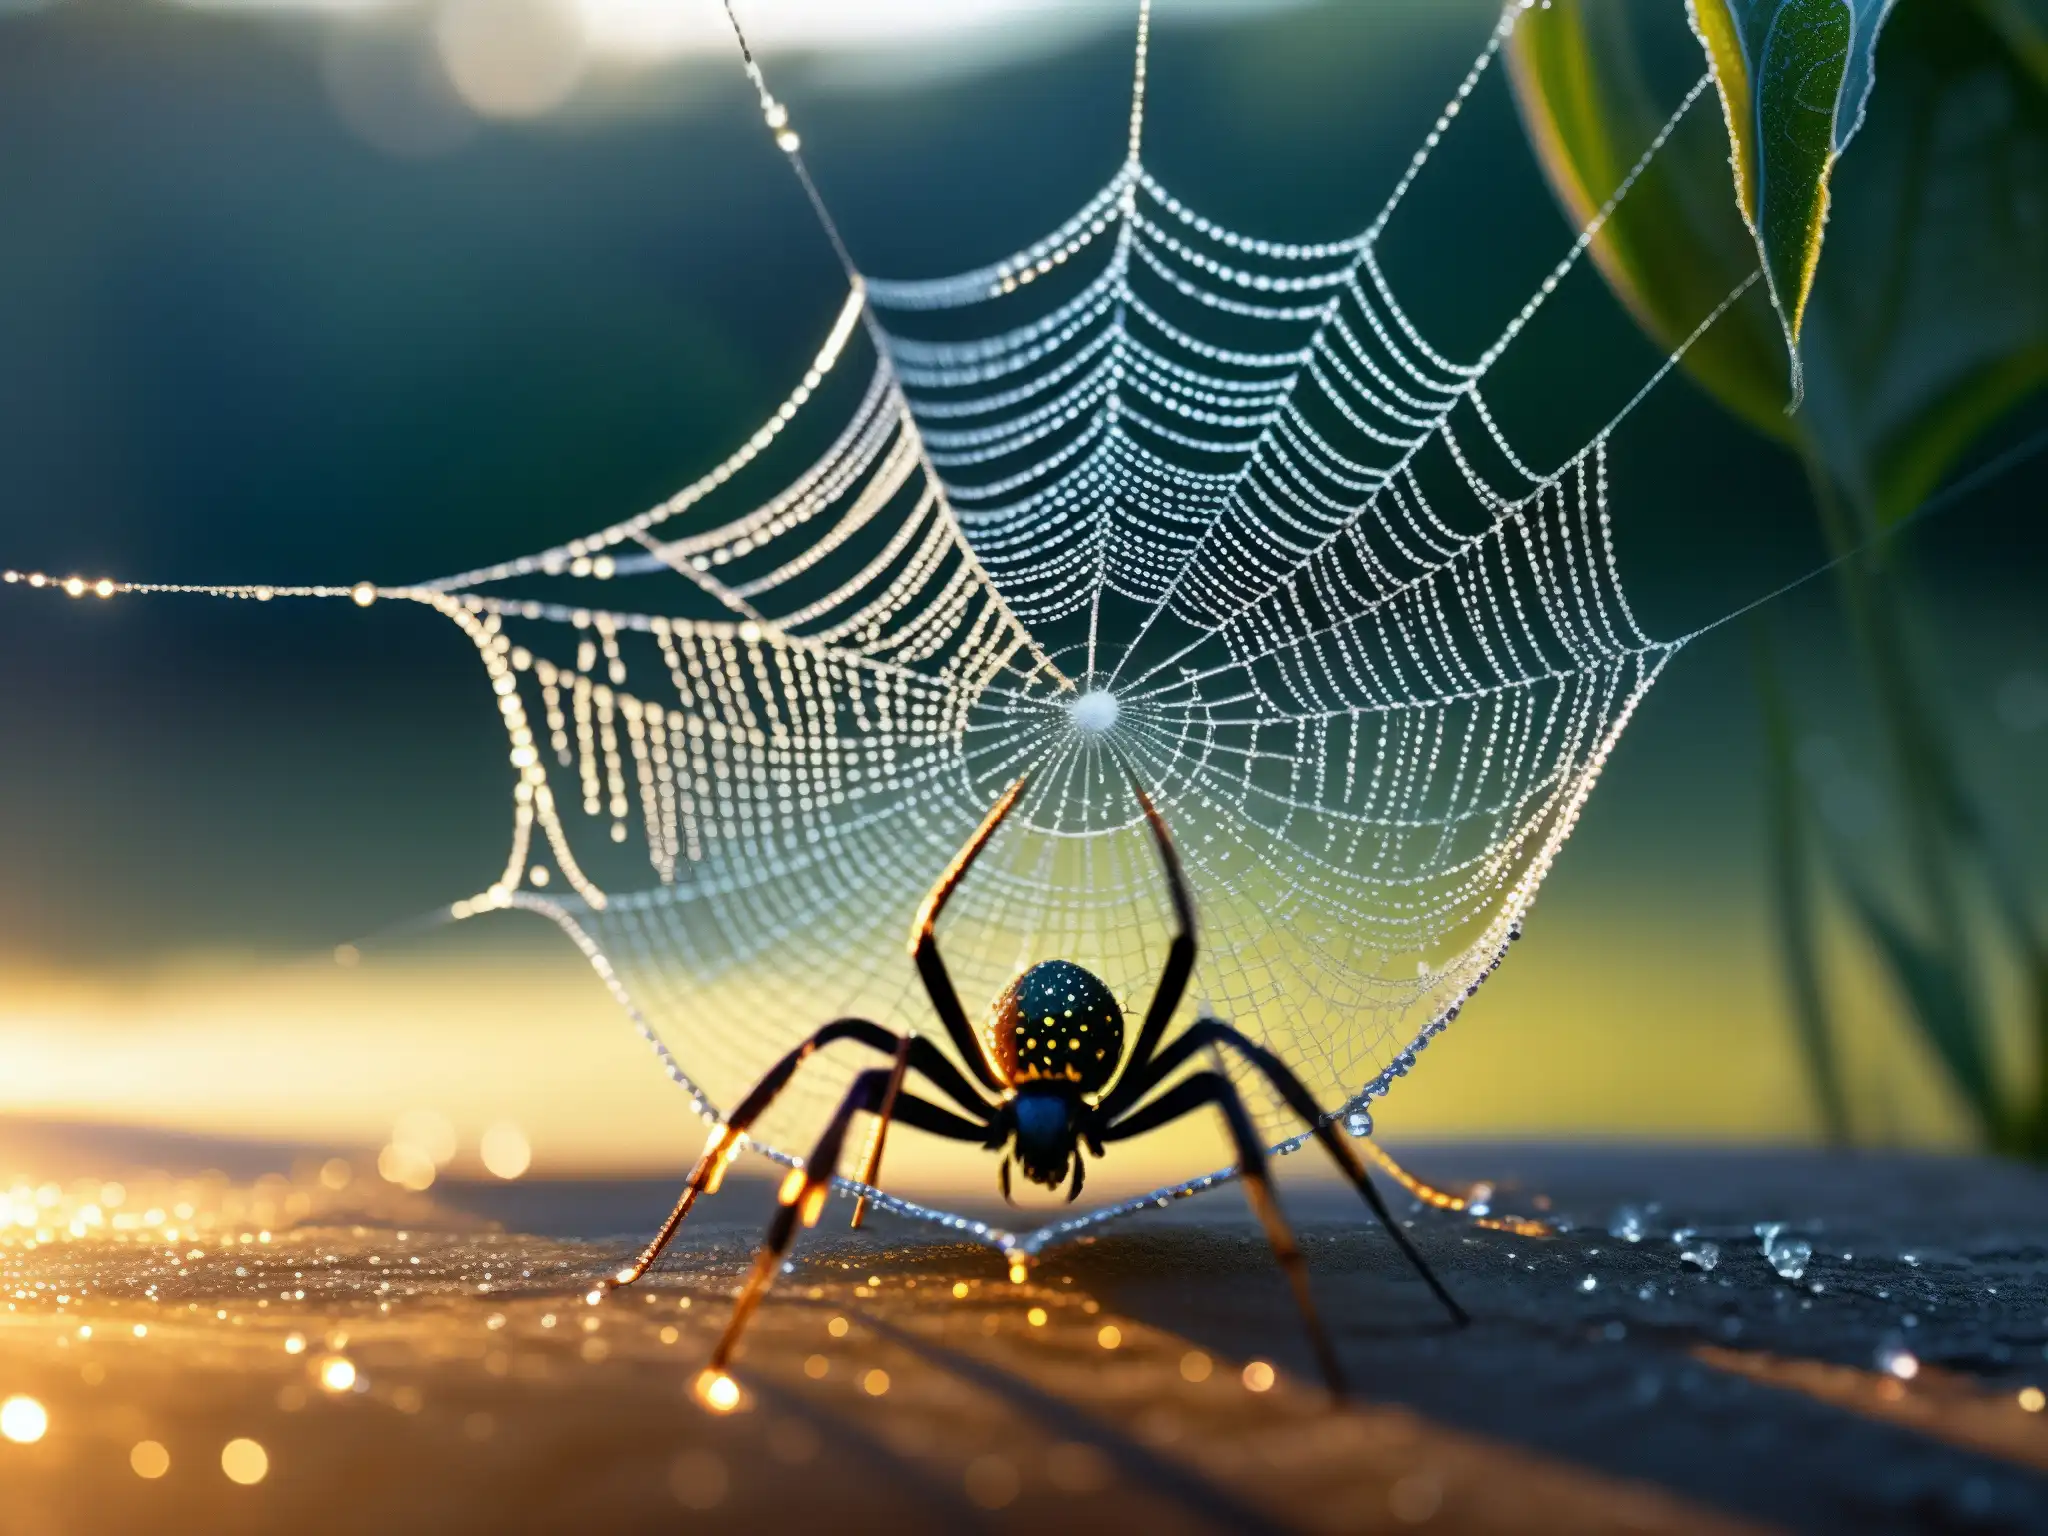 Jorogumo, leyenda araña mujer Japón, teje su intrigante tela en un jardín japonés al amanecer, con gotas de rocío brillando como diamantes